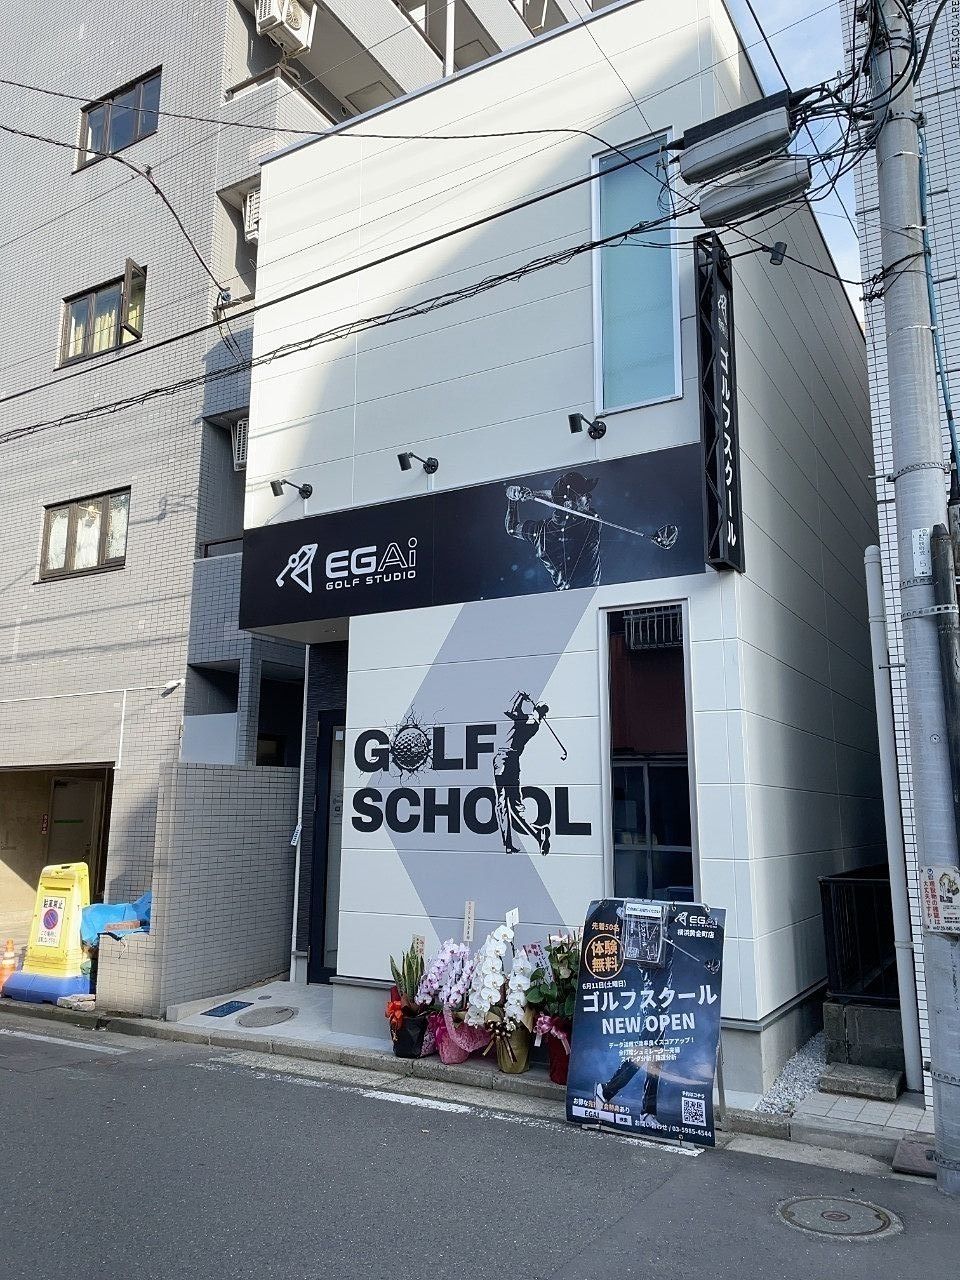 ゴルフスクール「EGAi」- 横浜市南区日枝町エリア情報